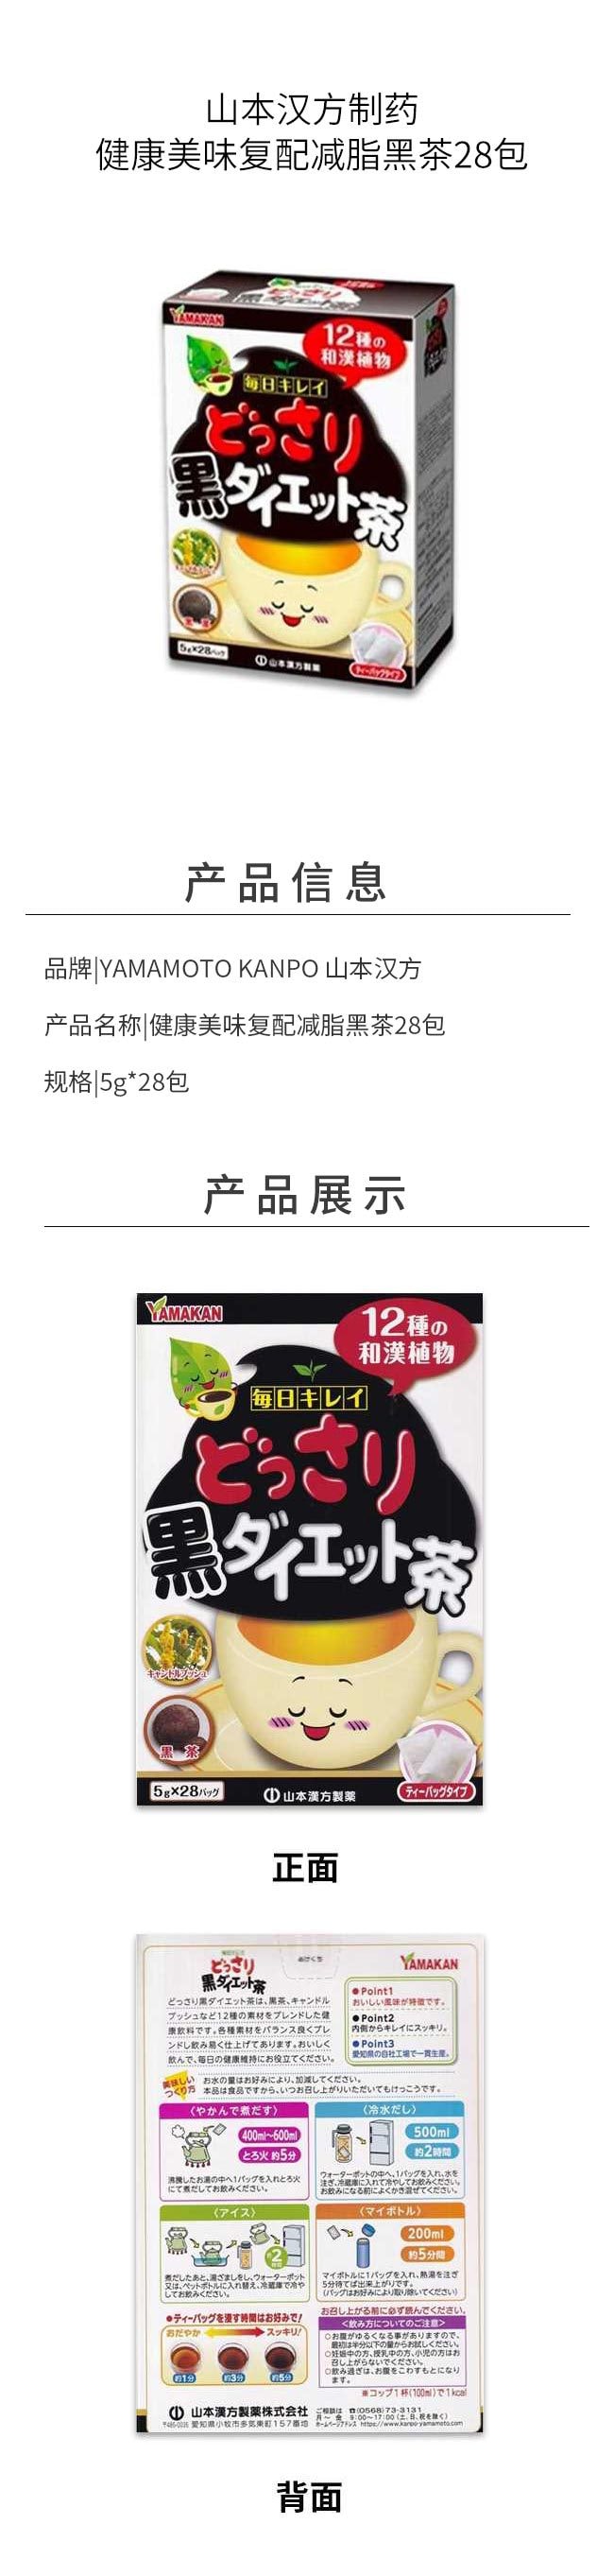 【日本直邮】YAMAMOTO山本汉方制药 浓黑减肥茶 28包入